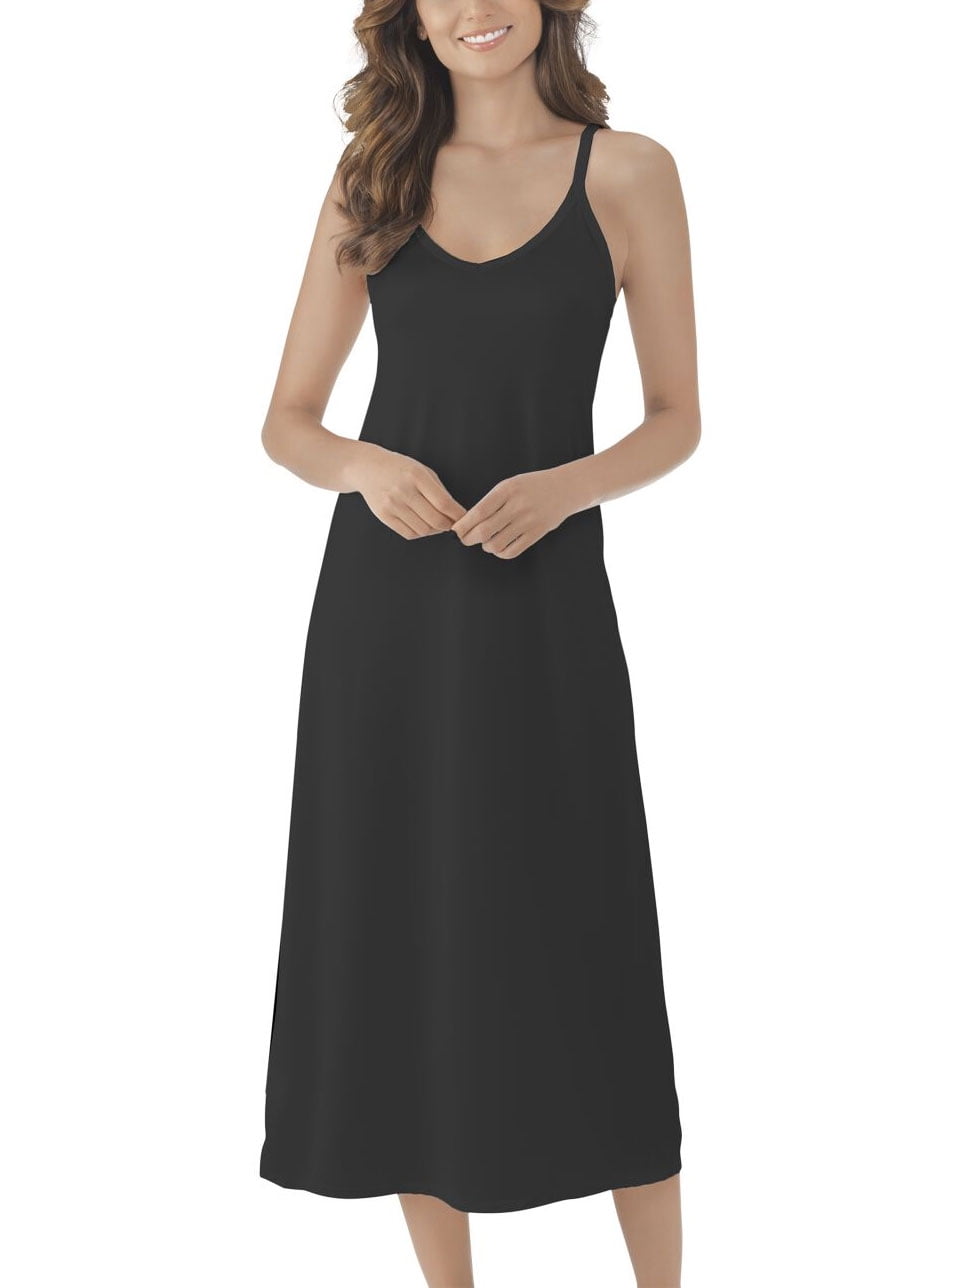 MANCYFIT Full Slips for Women Spaghetti Strap Under Dresses V Neck Sleeveless Nightgowns